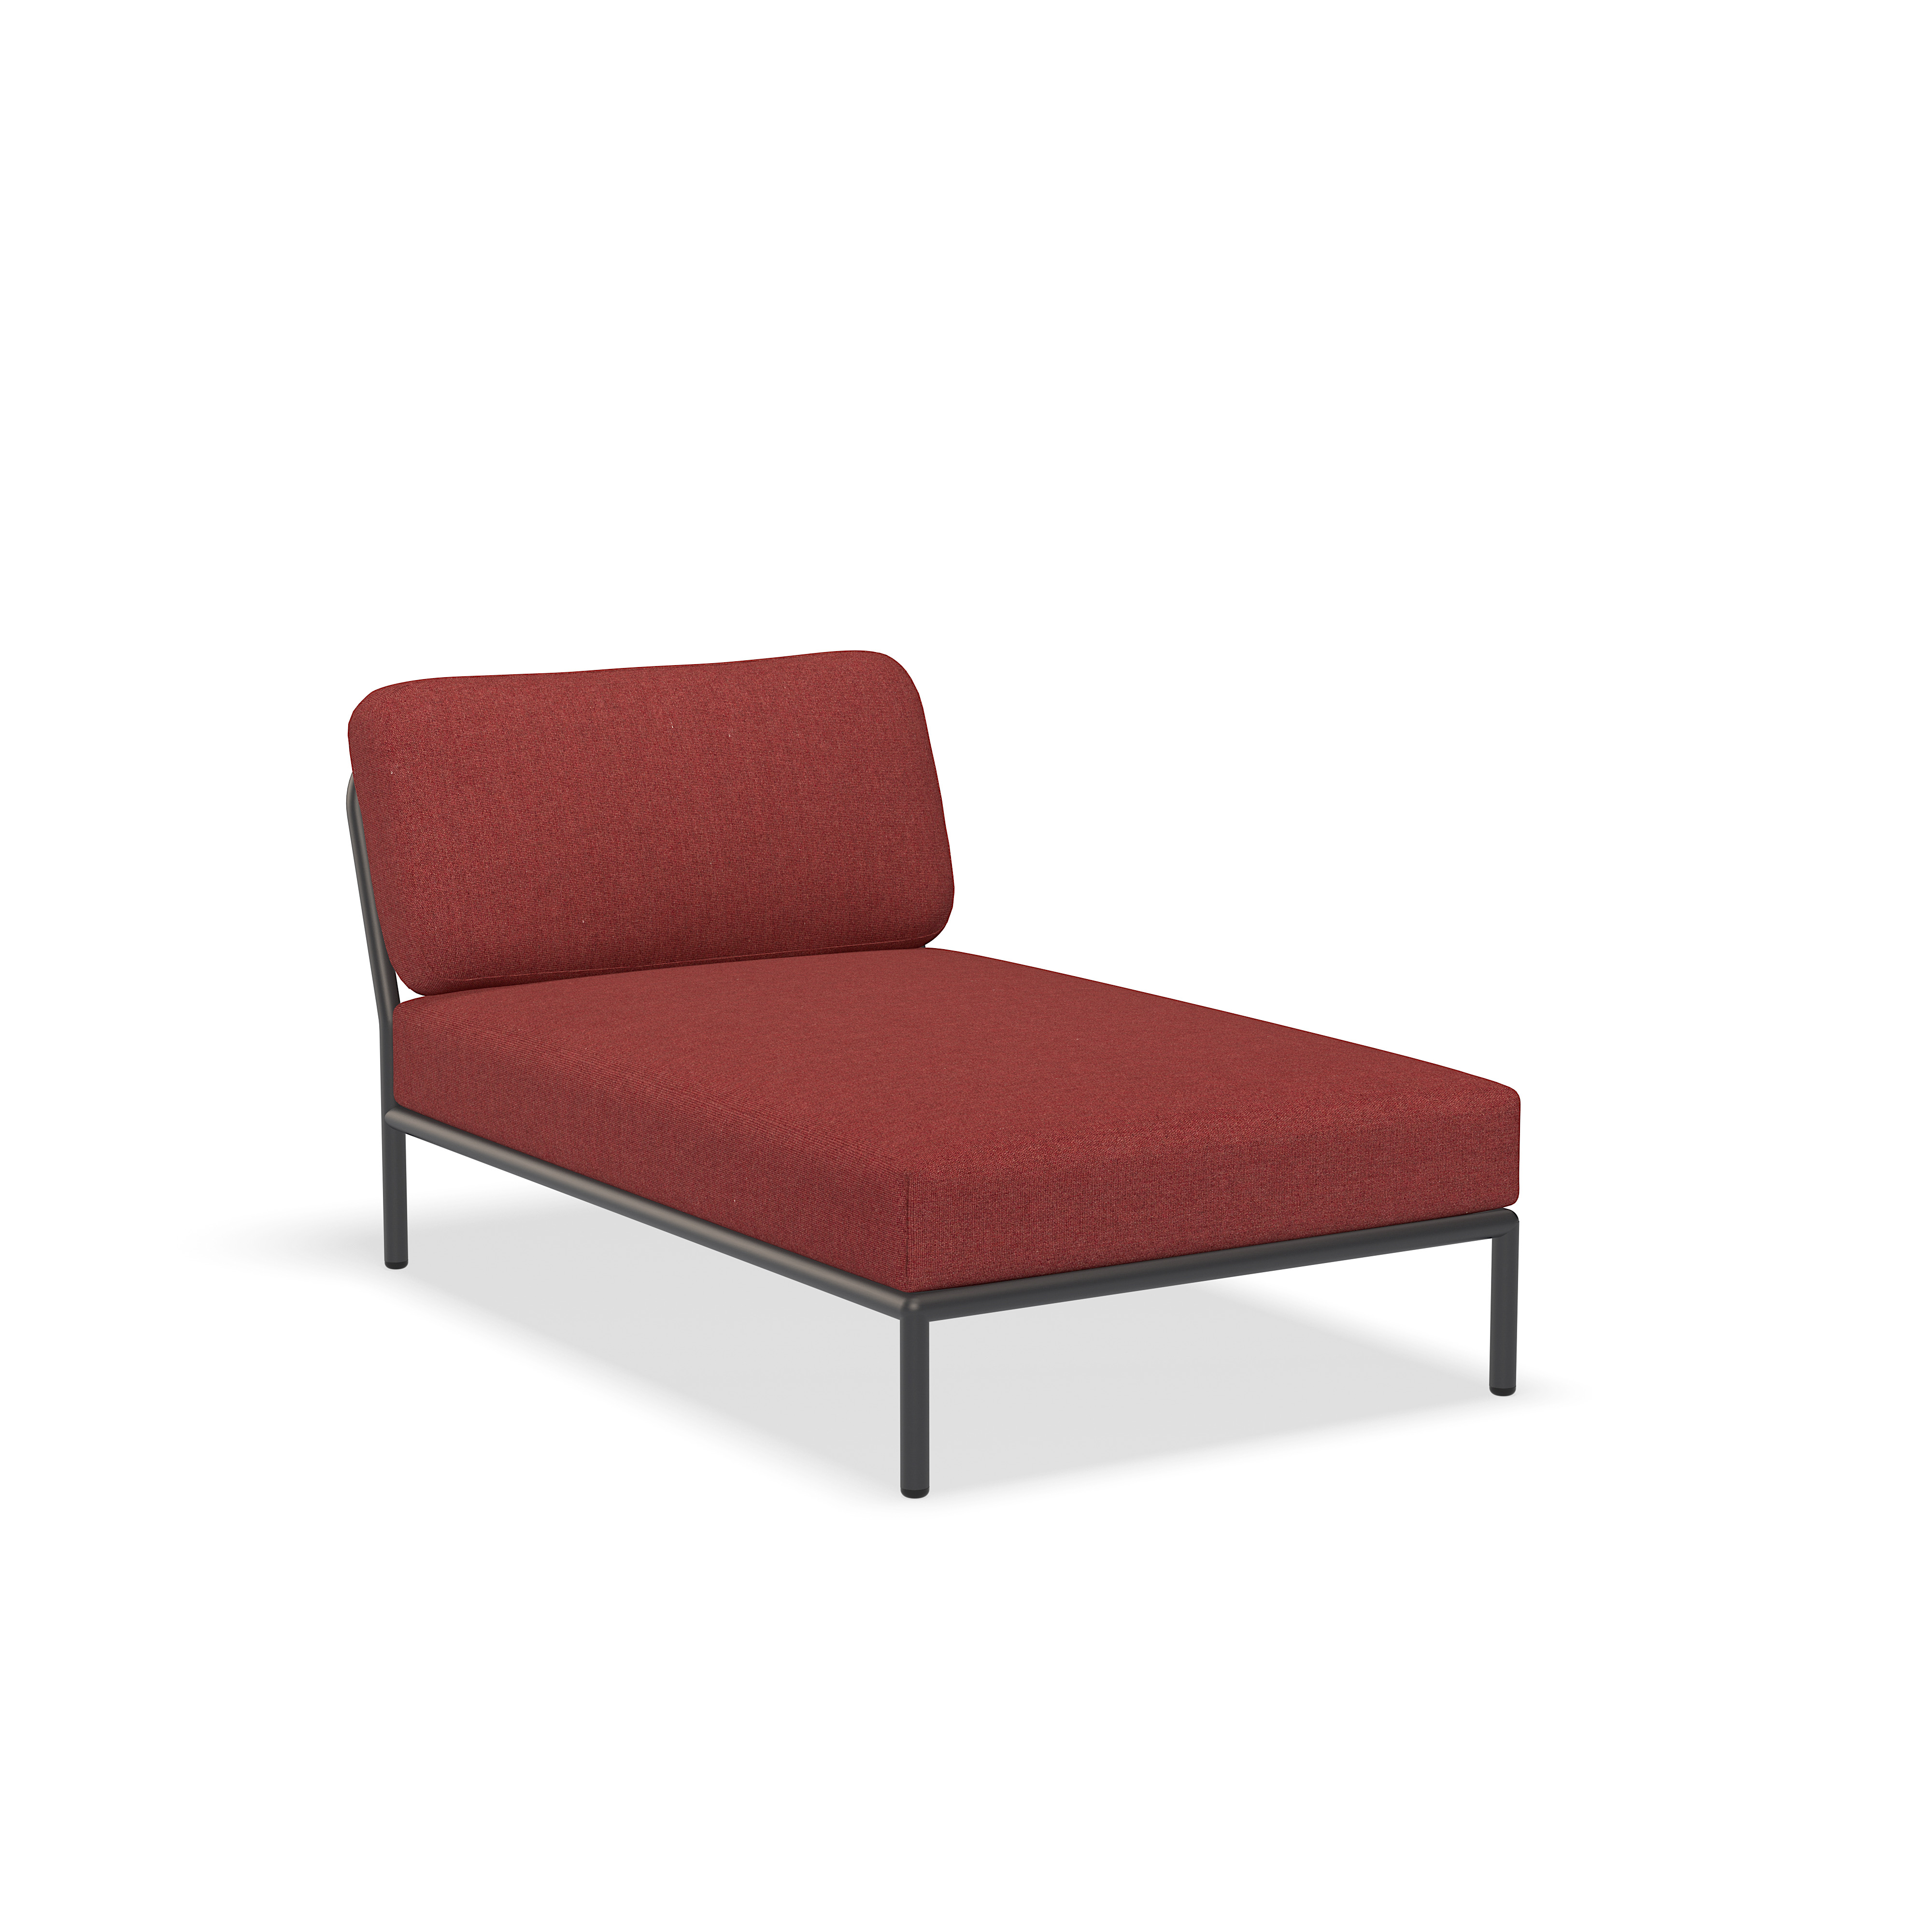 Lounge stol - 12209-1651 - Lounge stol, Scarlet (HERITAGE), mørkegrå struktur